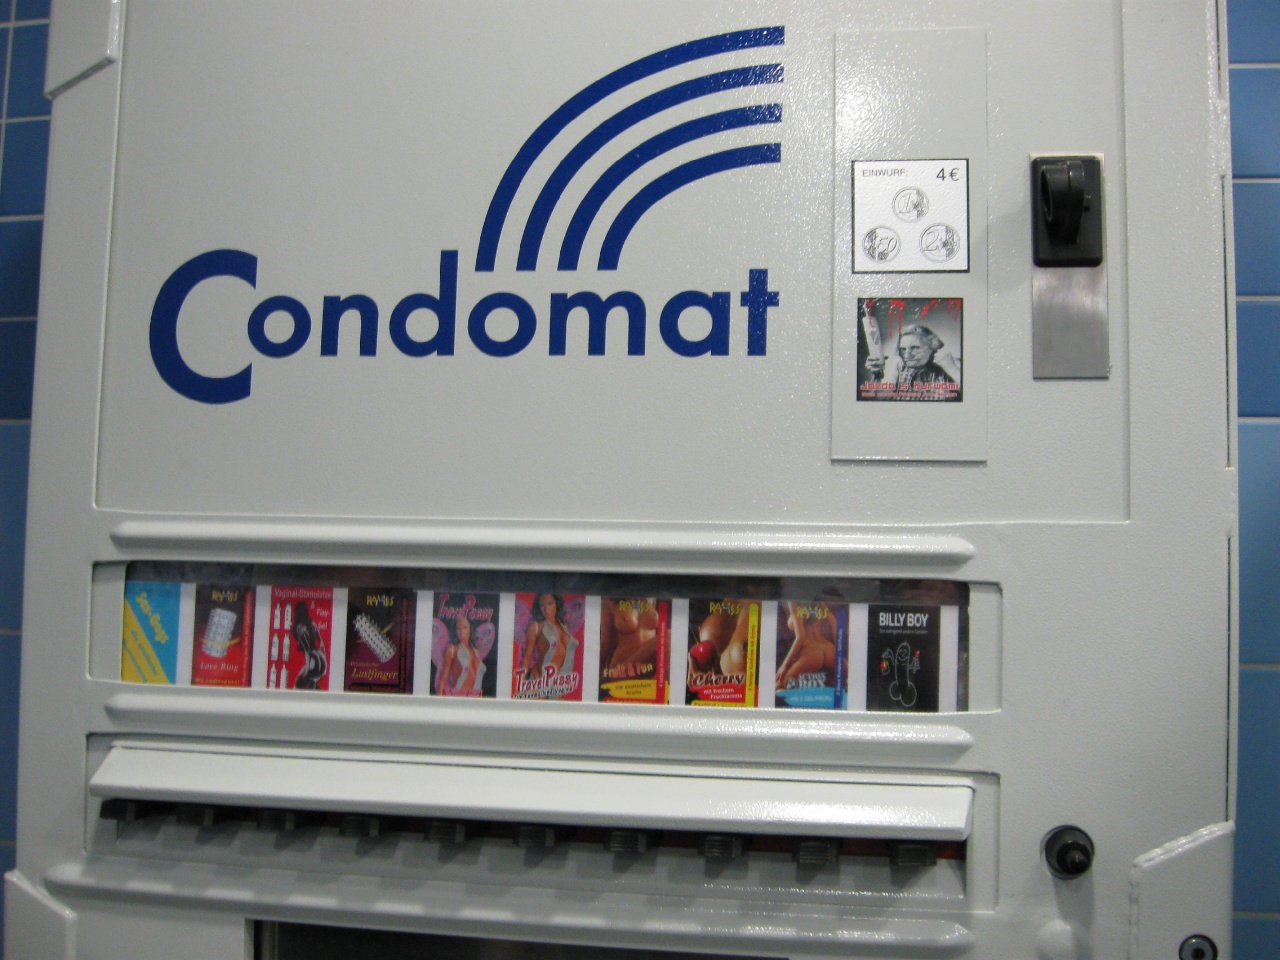 Auf dem Bild ist ein Kondomautomat zu sehen.